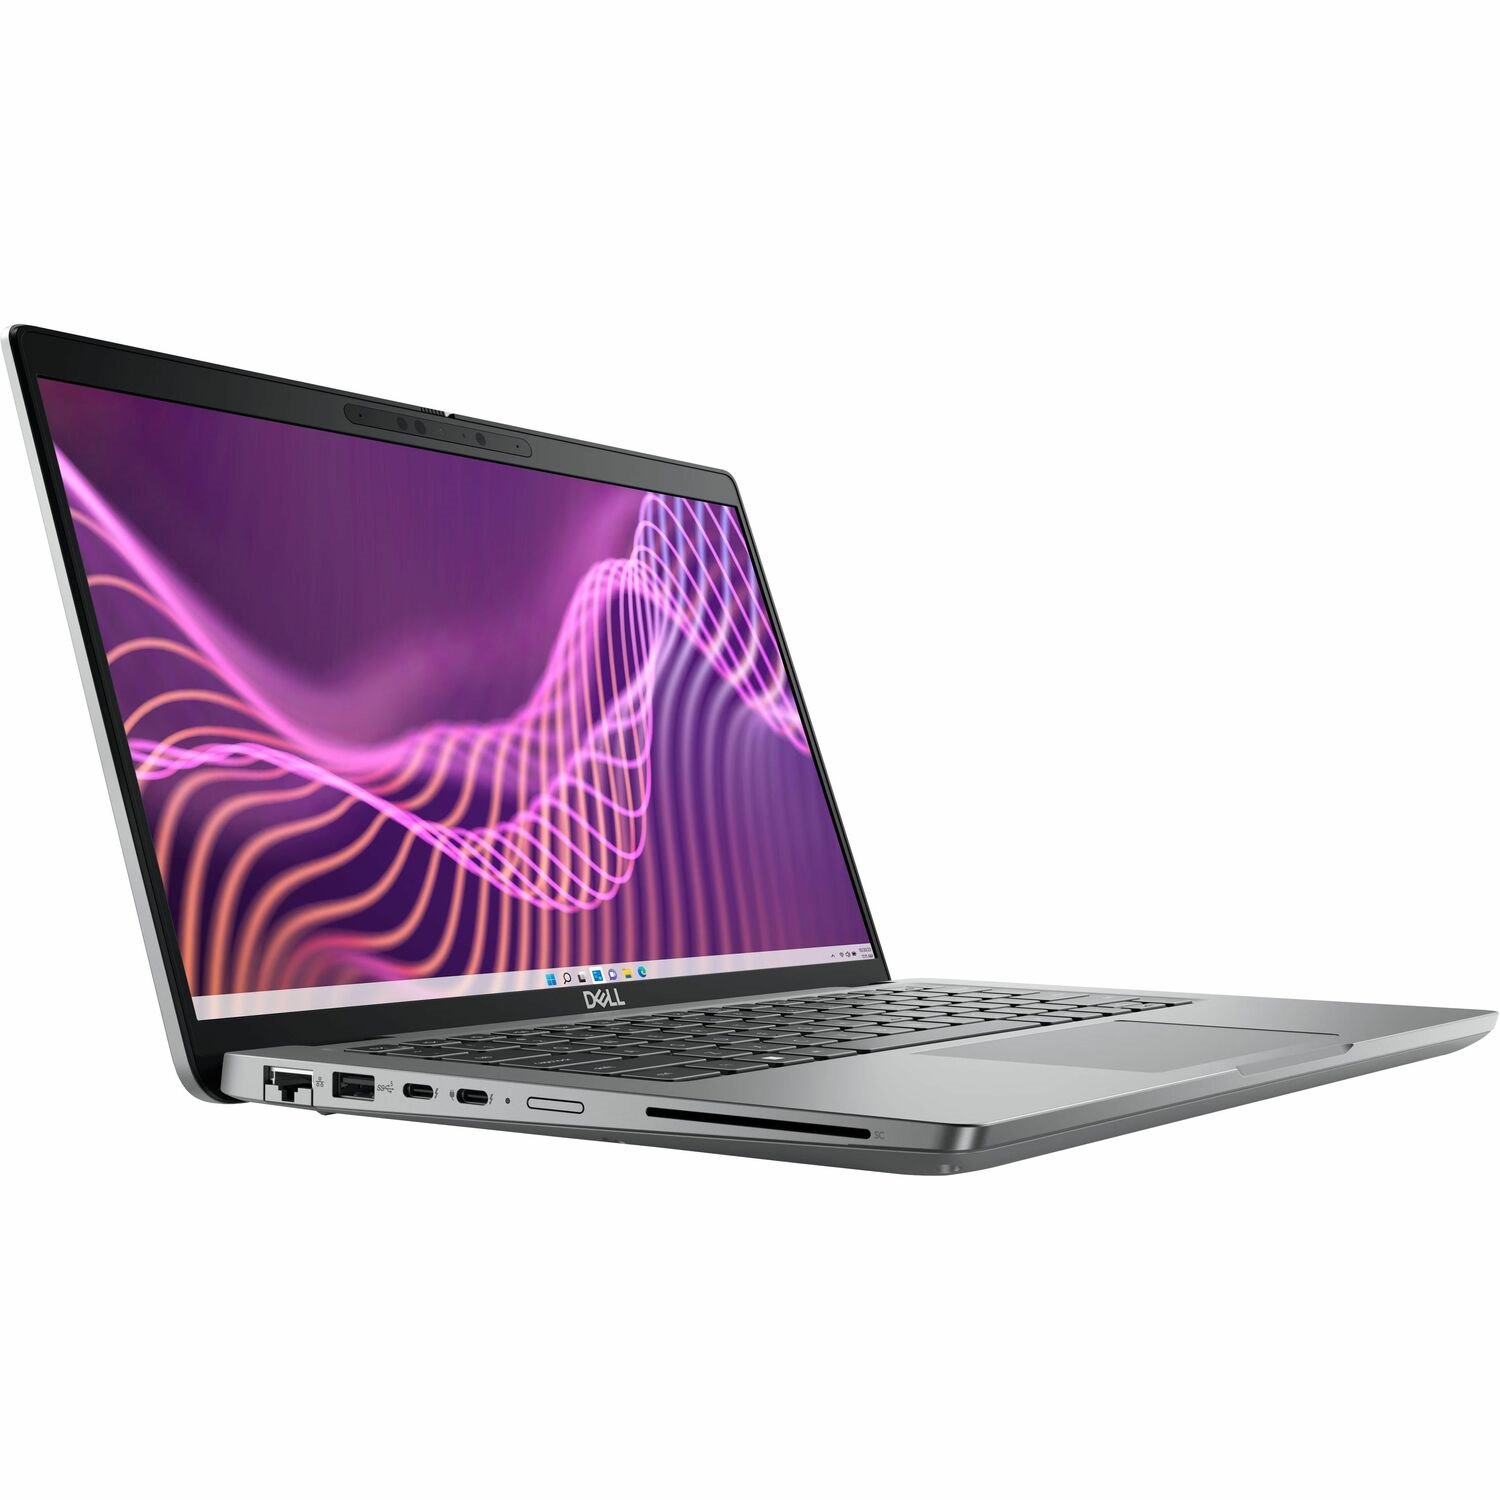 Dell Latitude 5000 5440 14" Thin Client Notebook - Full HD - Intel Core i5 13th Gen i5-1345U - 8 GB - 256 GB SSD